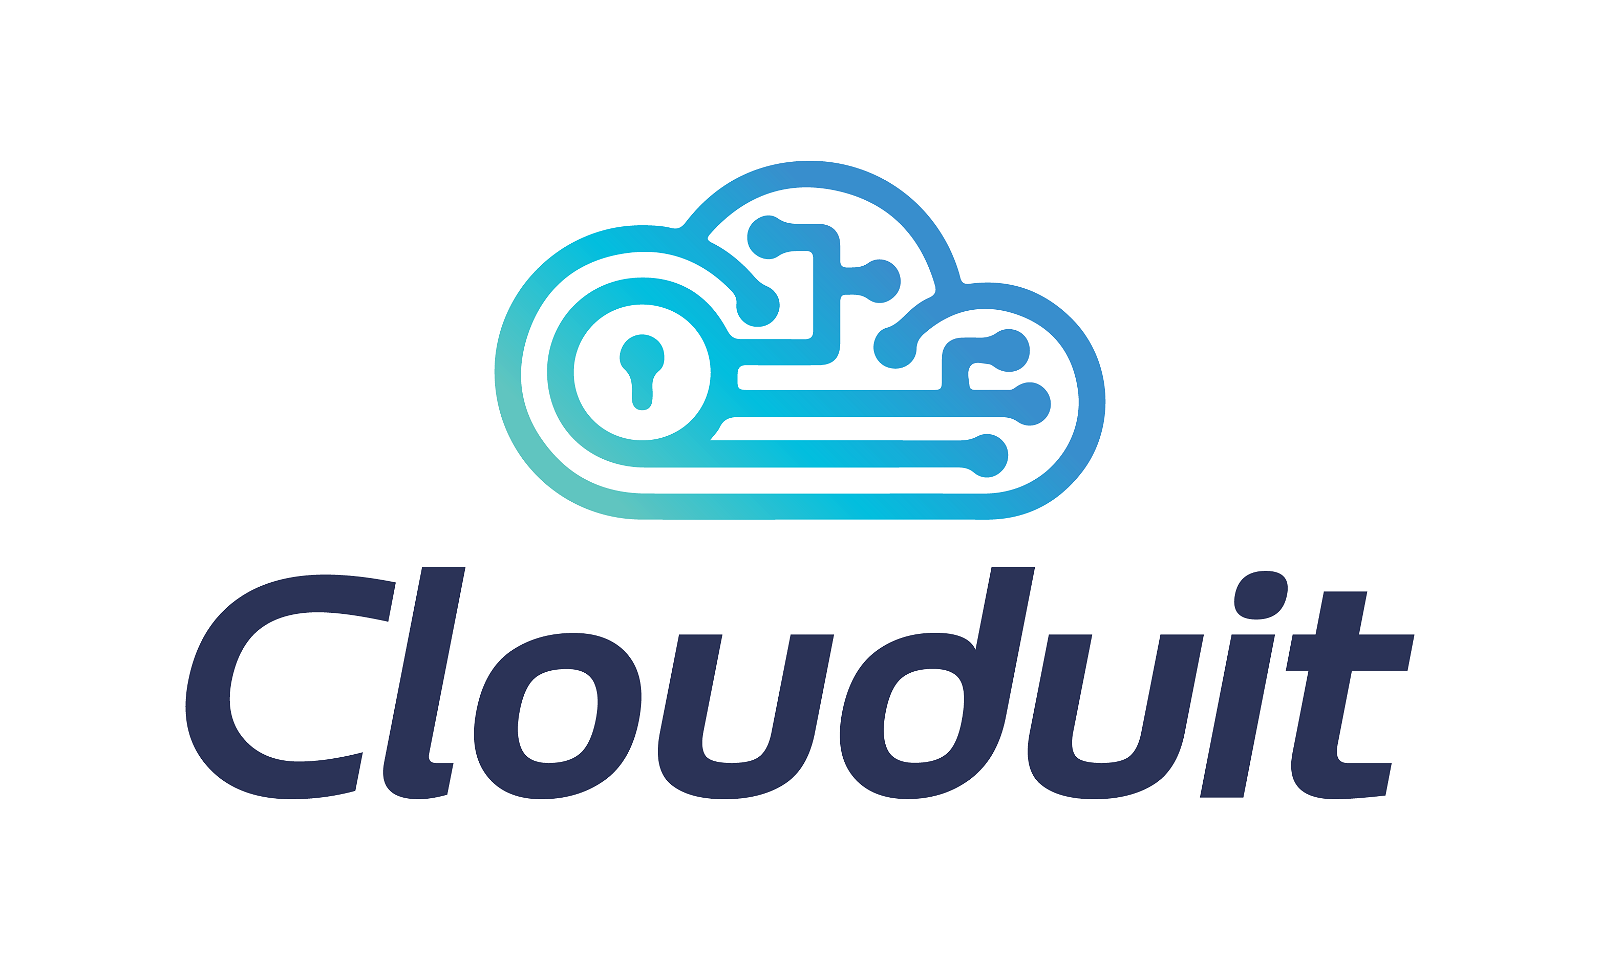 Clouduit.com - Creative brandable domain for sale